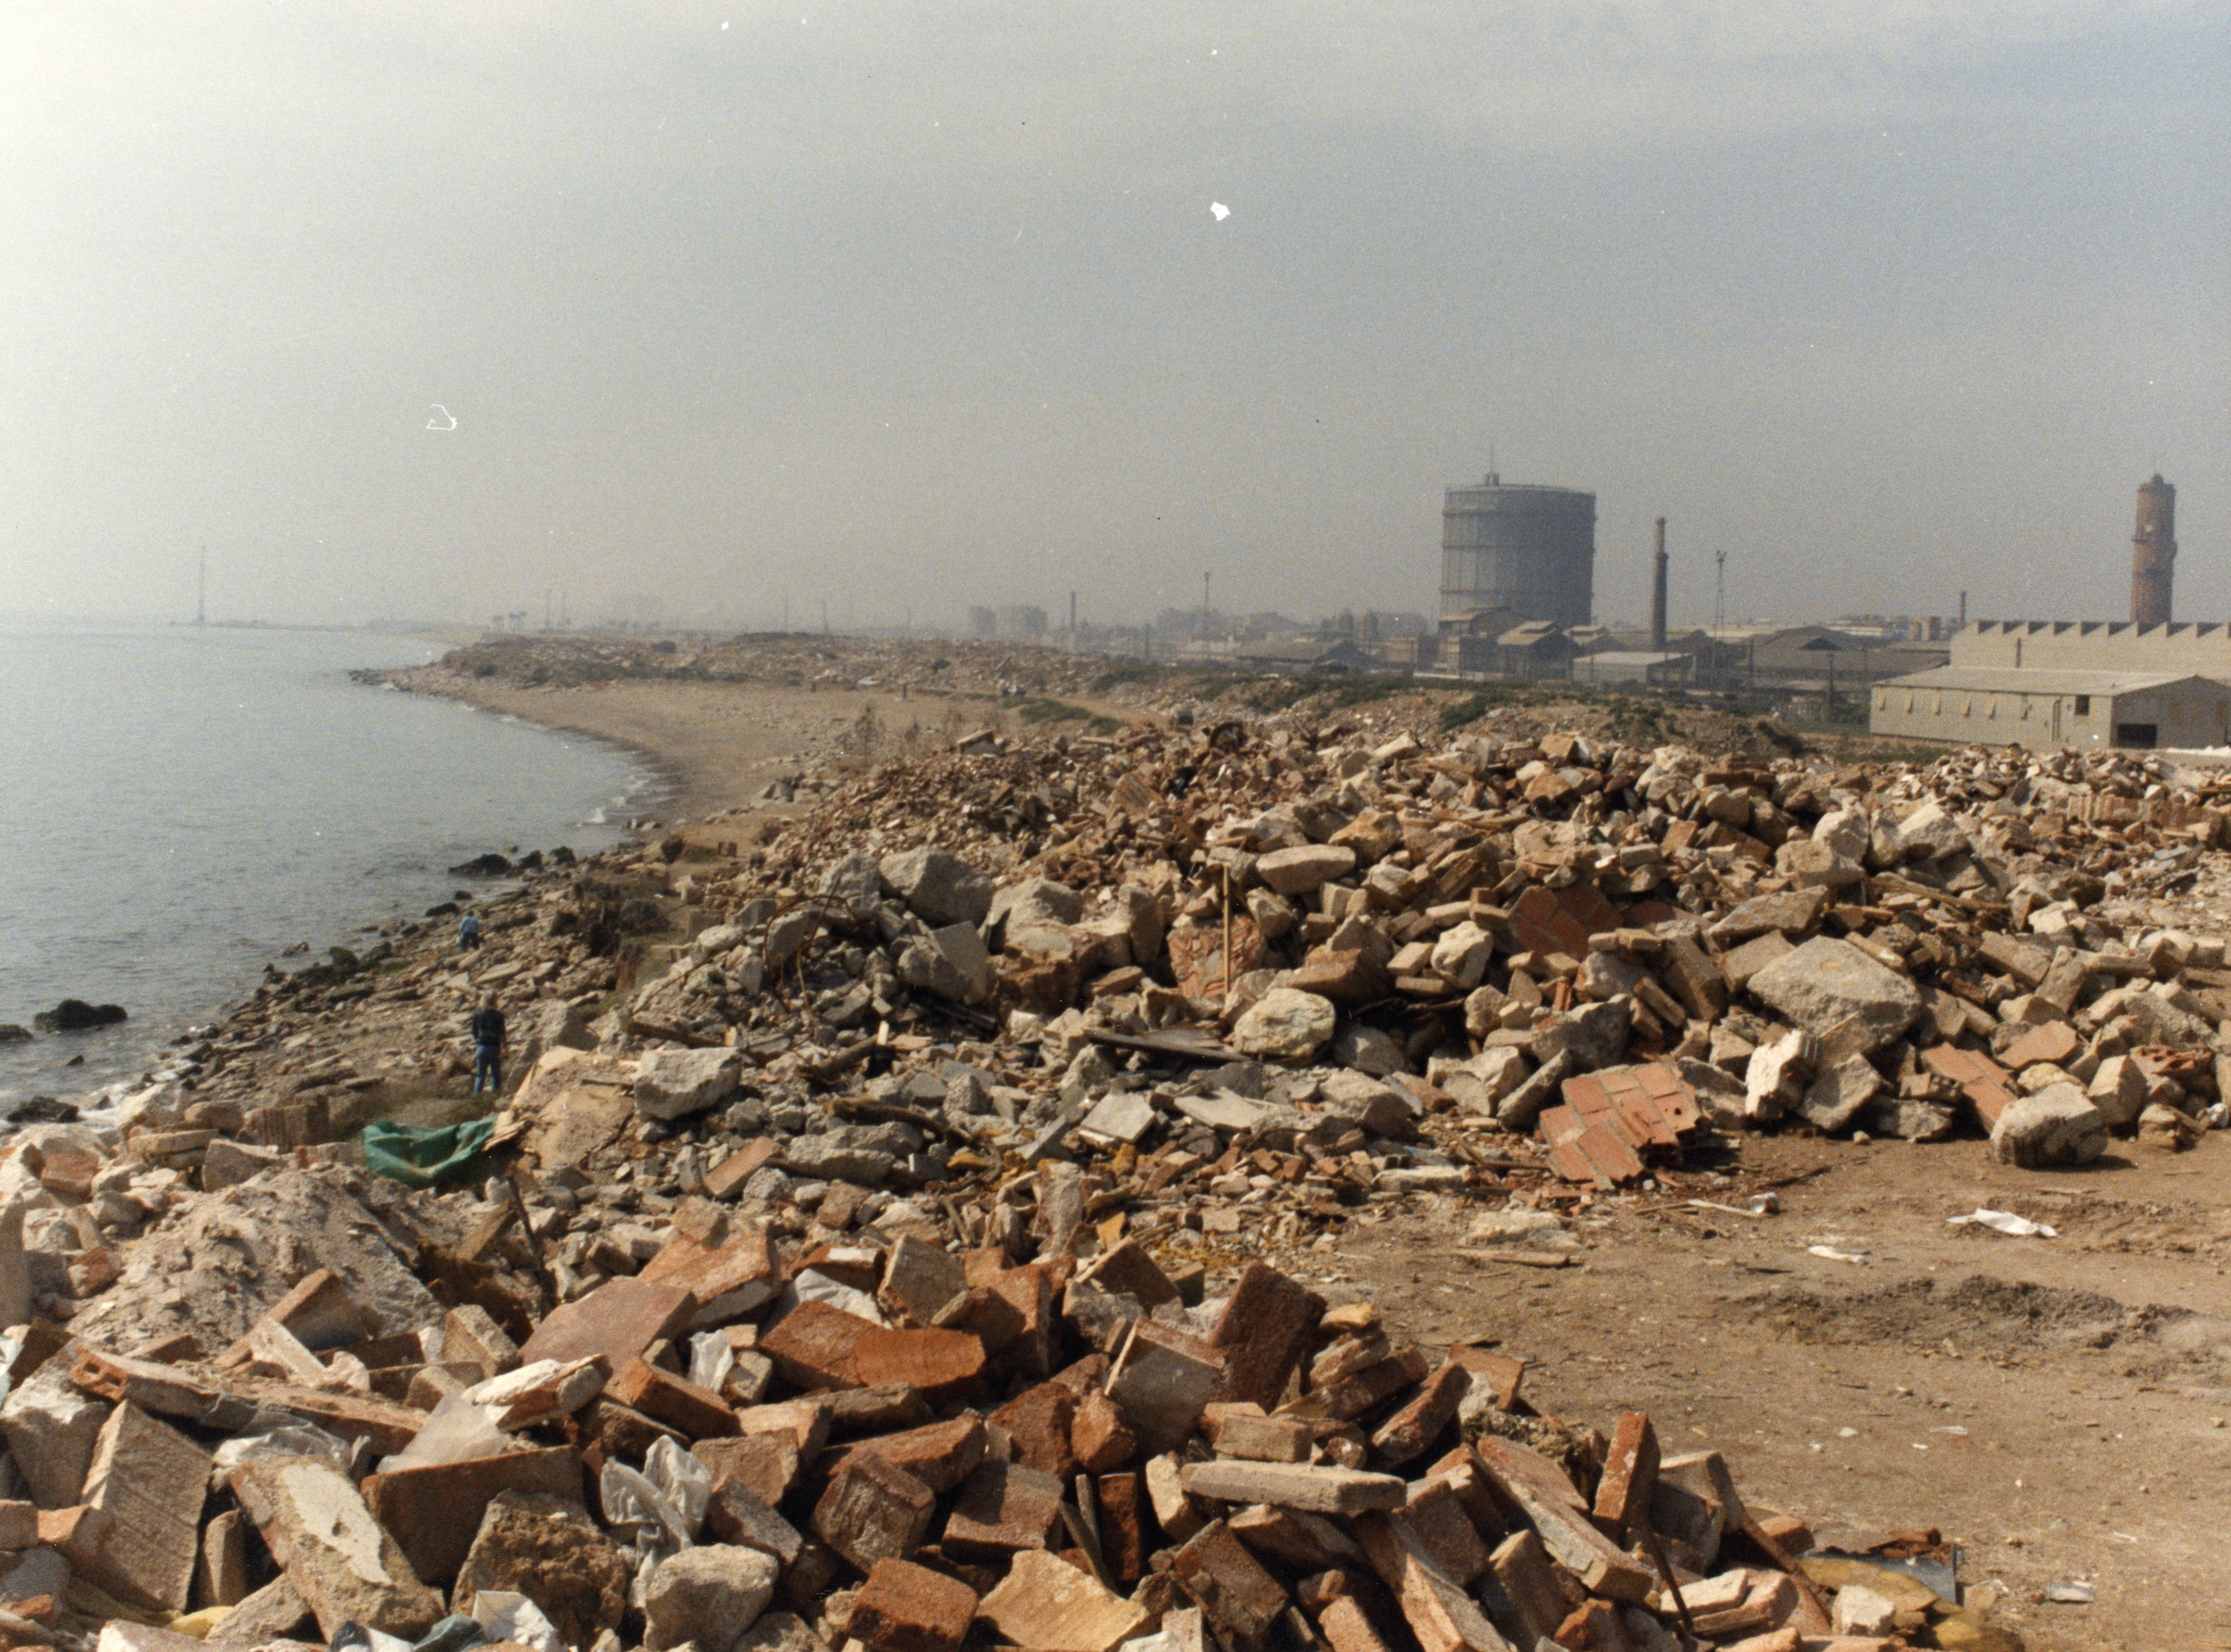 Martí Llorens, 'Platges durant la construcció de la Vila Olímpica', 1988. Positiu de color cromogen, 17,7 × 23,9 cm. Procedència: Arxiu Fotogràfic de Barcelona